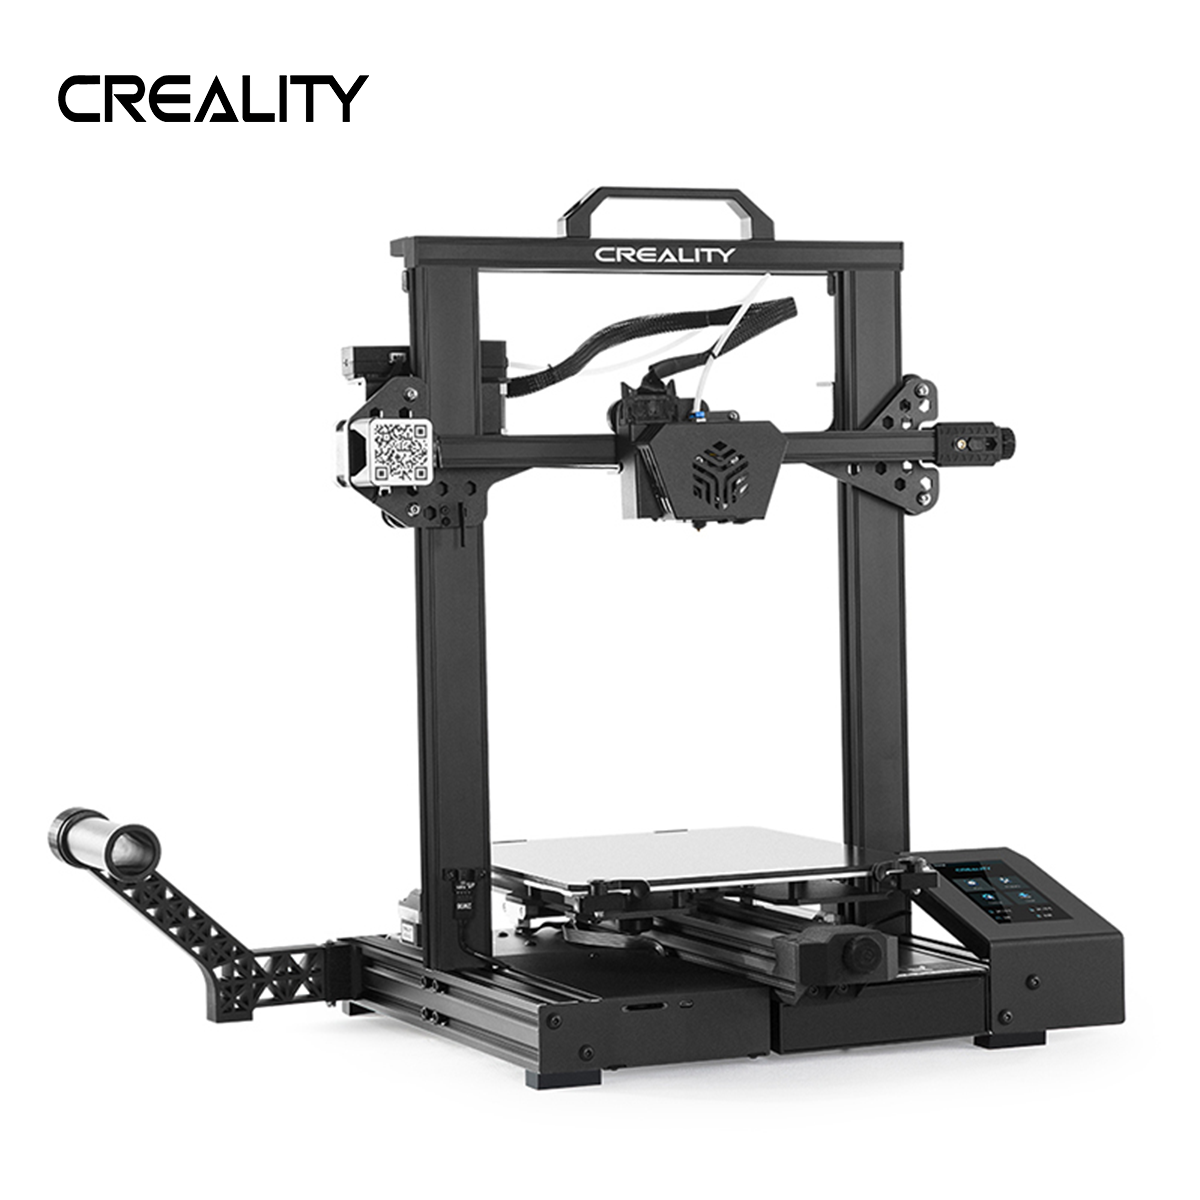  CR-6 SE 3D Printer